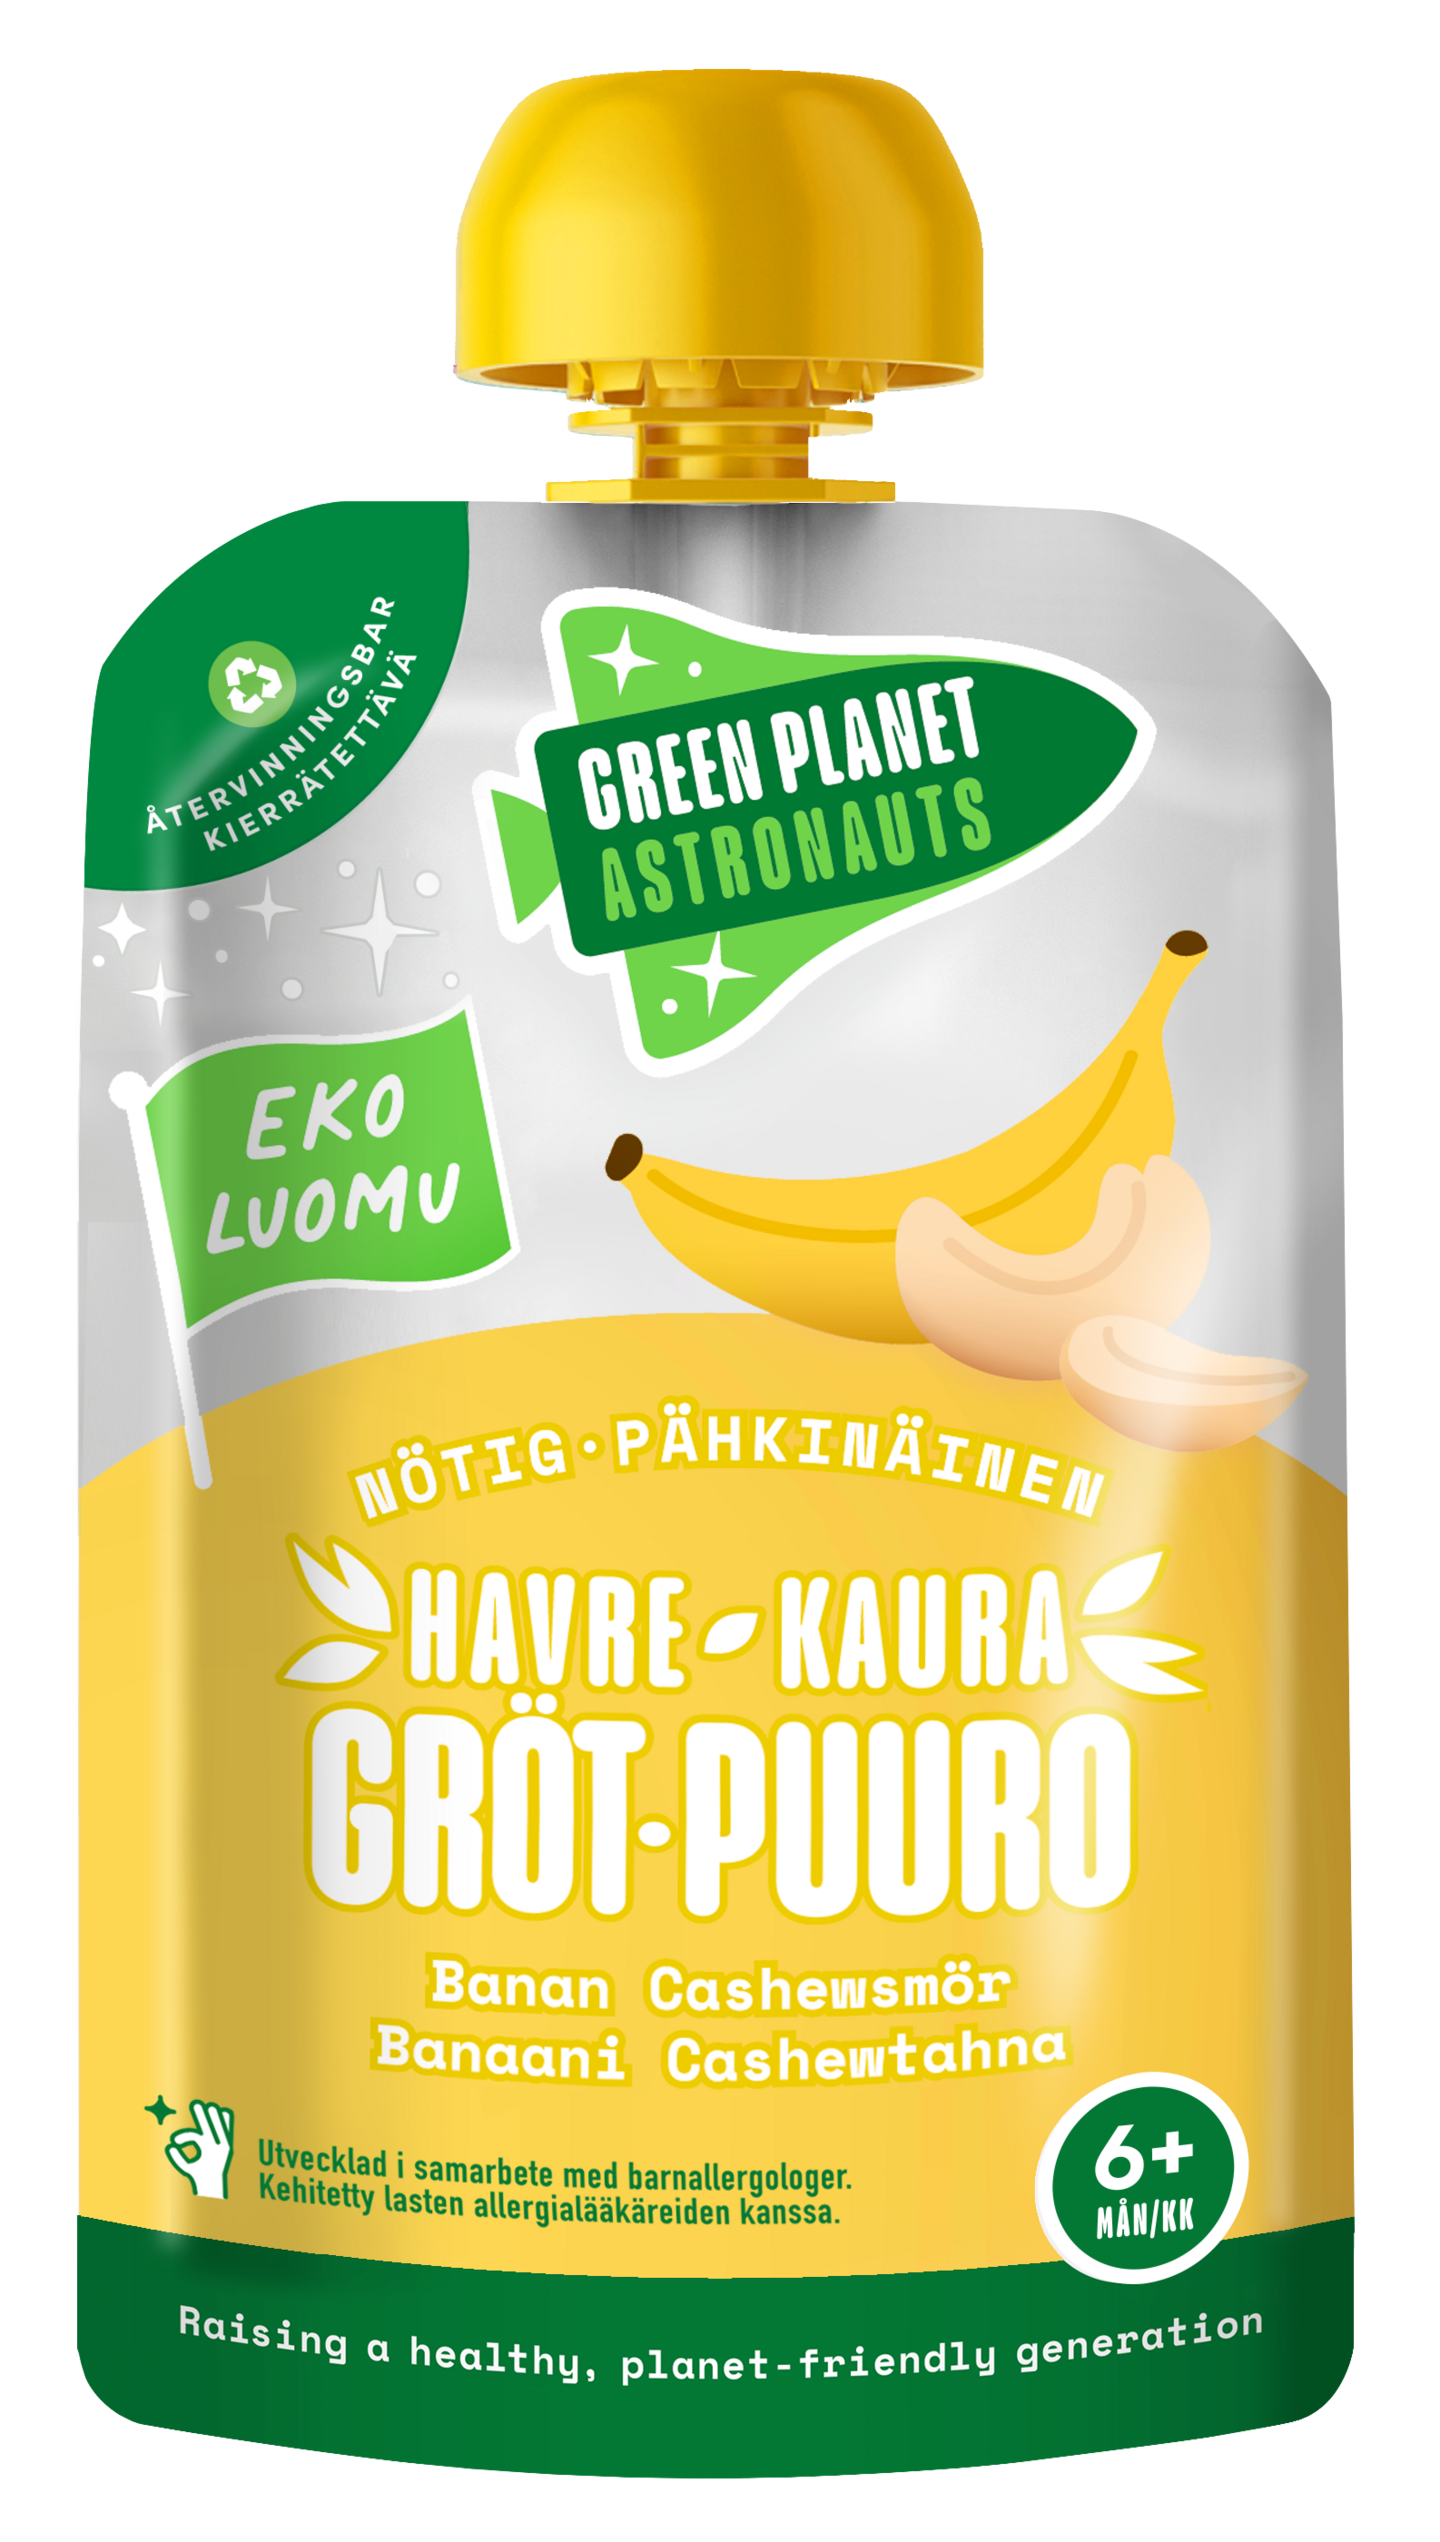 Green Planet Astronauts Luomu kaurapuuro 100g 6kk pähkinä banaani